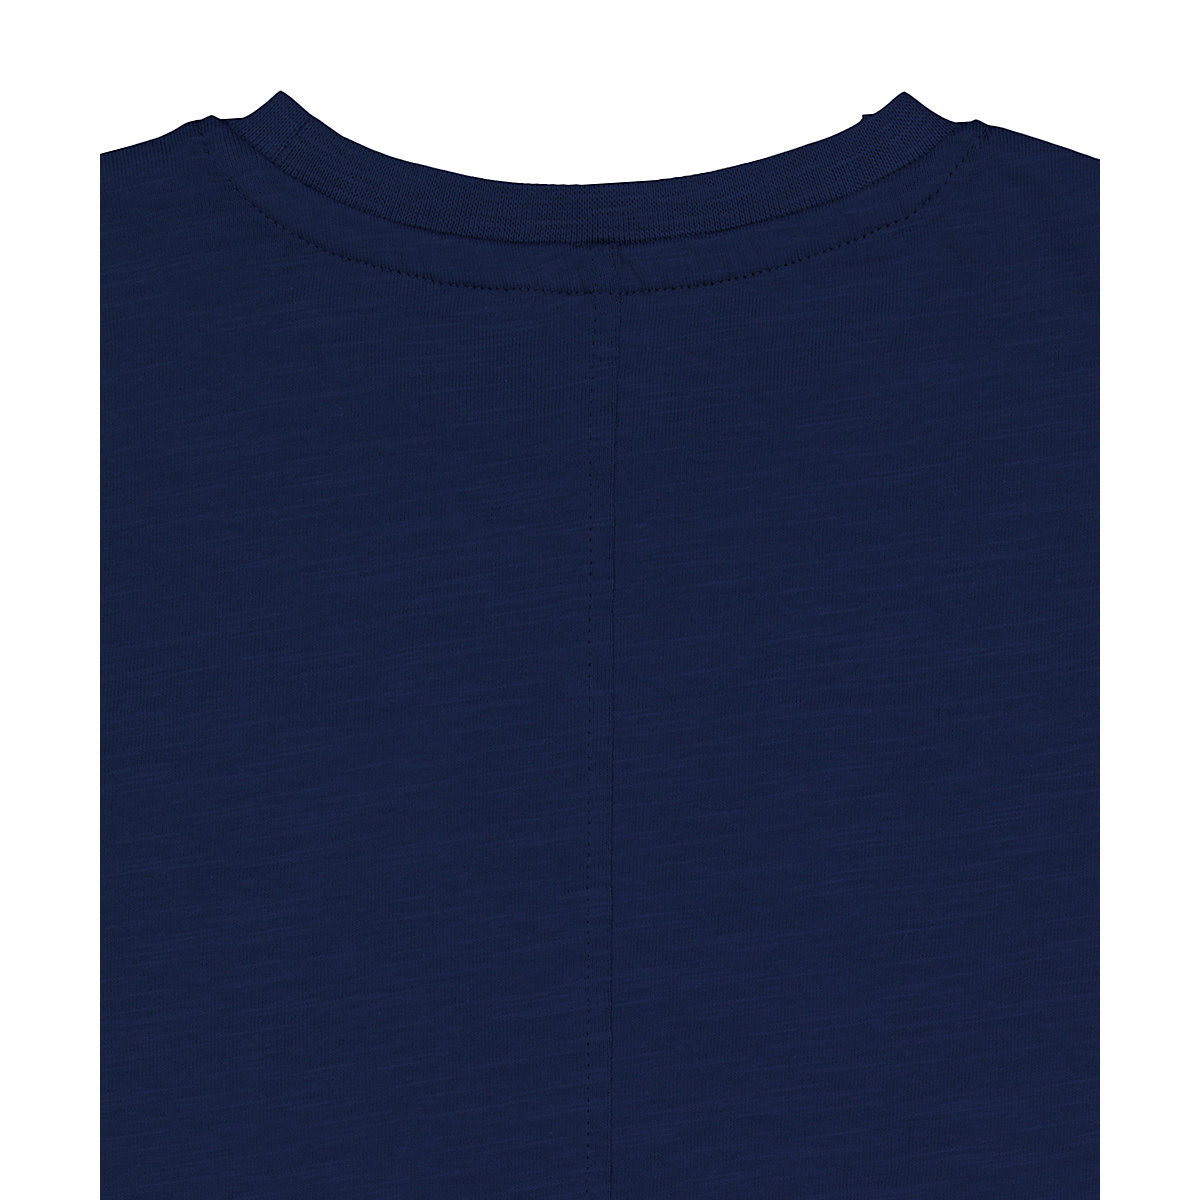 تی شرت پسرانه 27401 سایز 1.5 تا 10 سال مارک MOTHERCARE   *